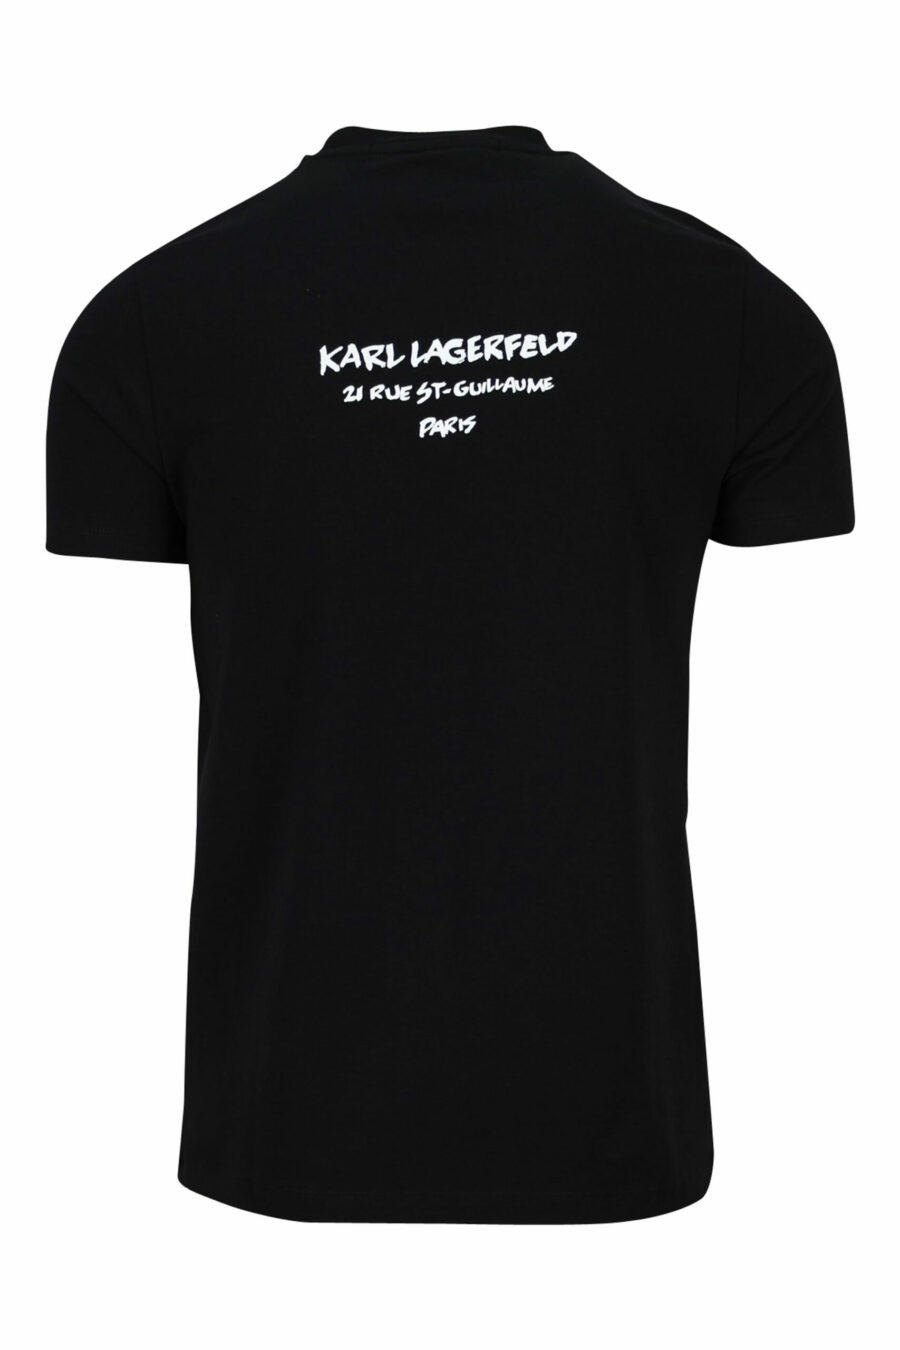 Camiseta negra con maxilogo "karl" perfil camuflado - 4062226401906 1 scaled